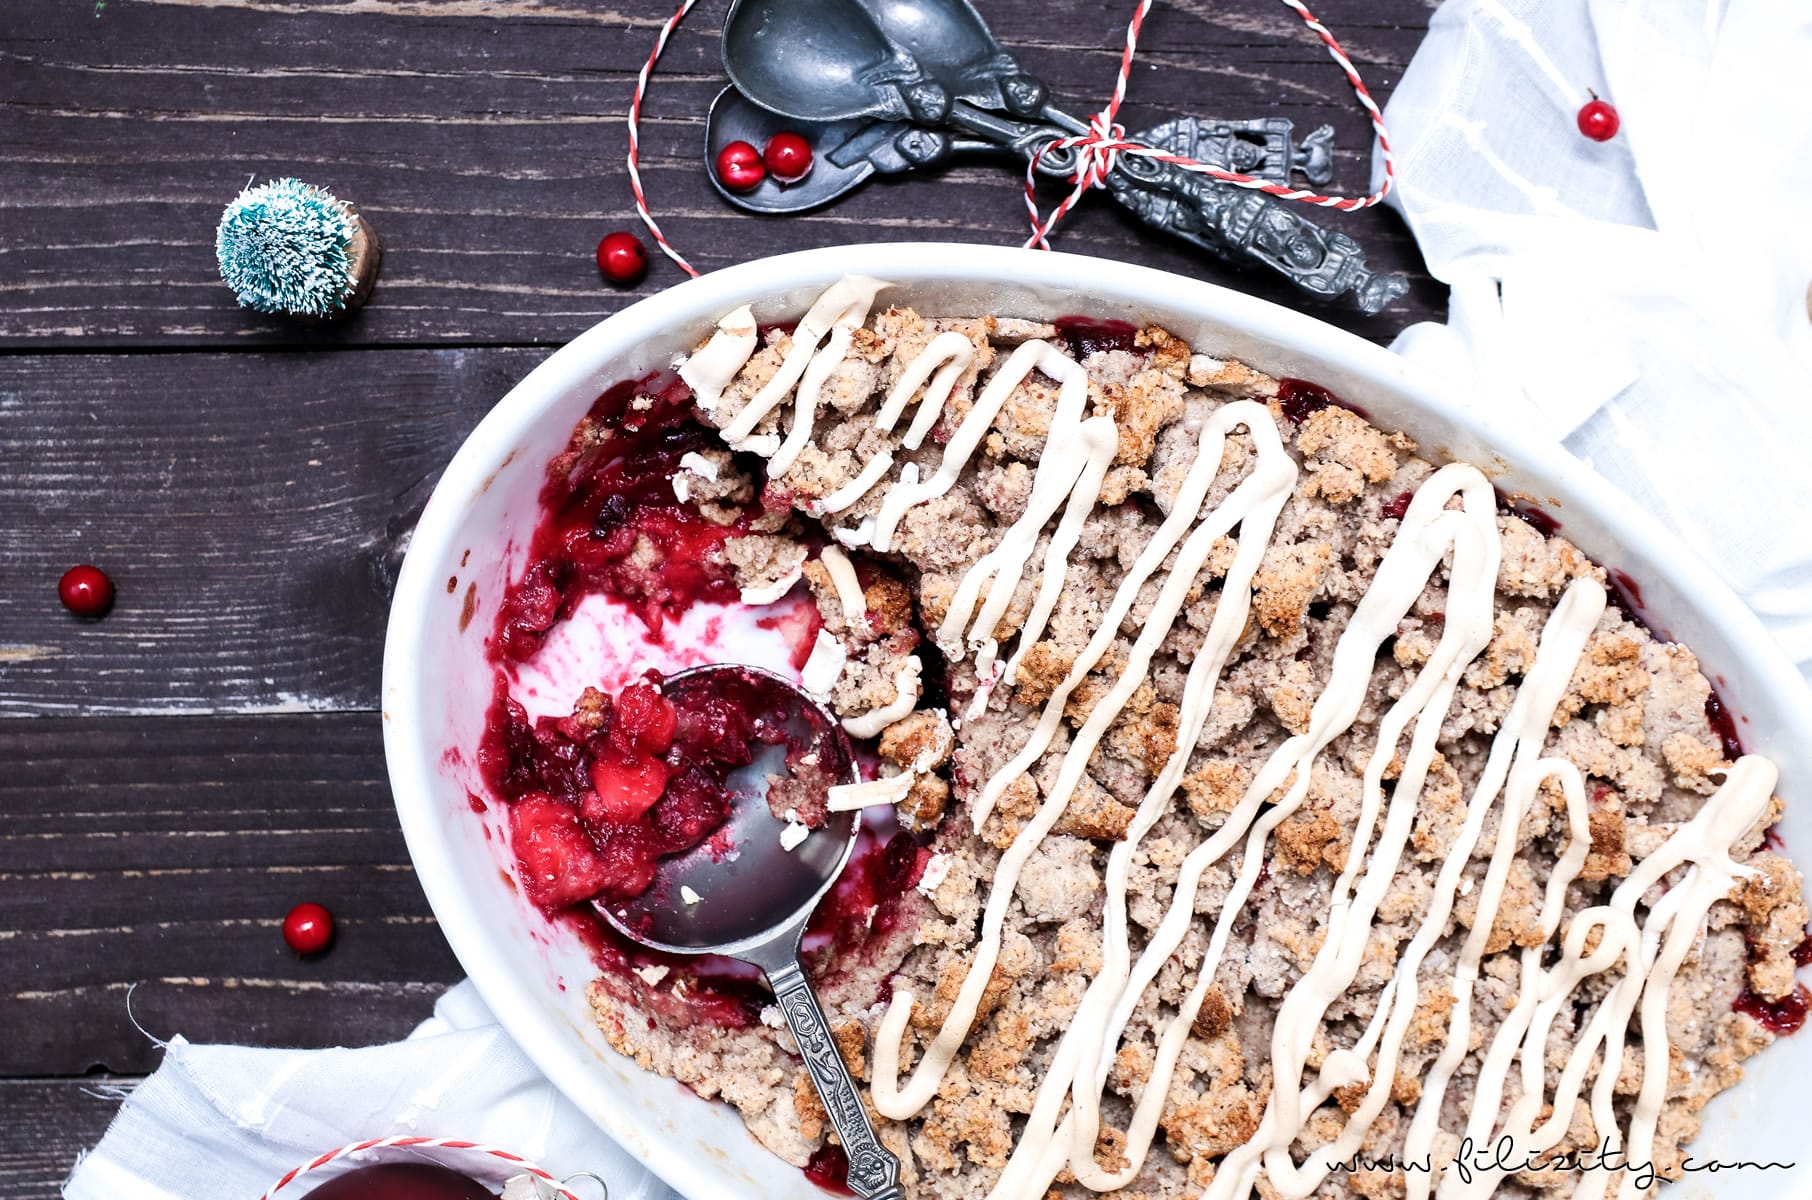 Rezept für Weihnachts-Crumble mit Cranberries und Zimtsterne-Streuseln | Filizity.com | Food-Blog aus dem Rheinland #dessert #weihnachten #zimtsterne #plätzchen